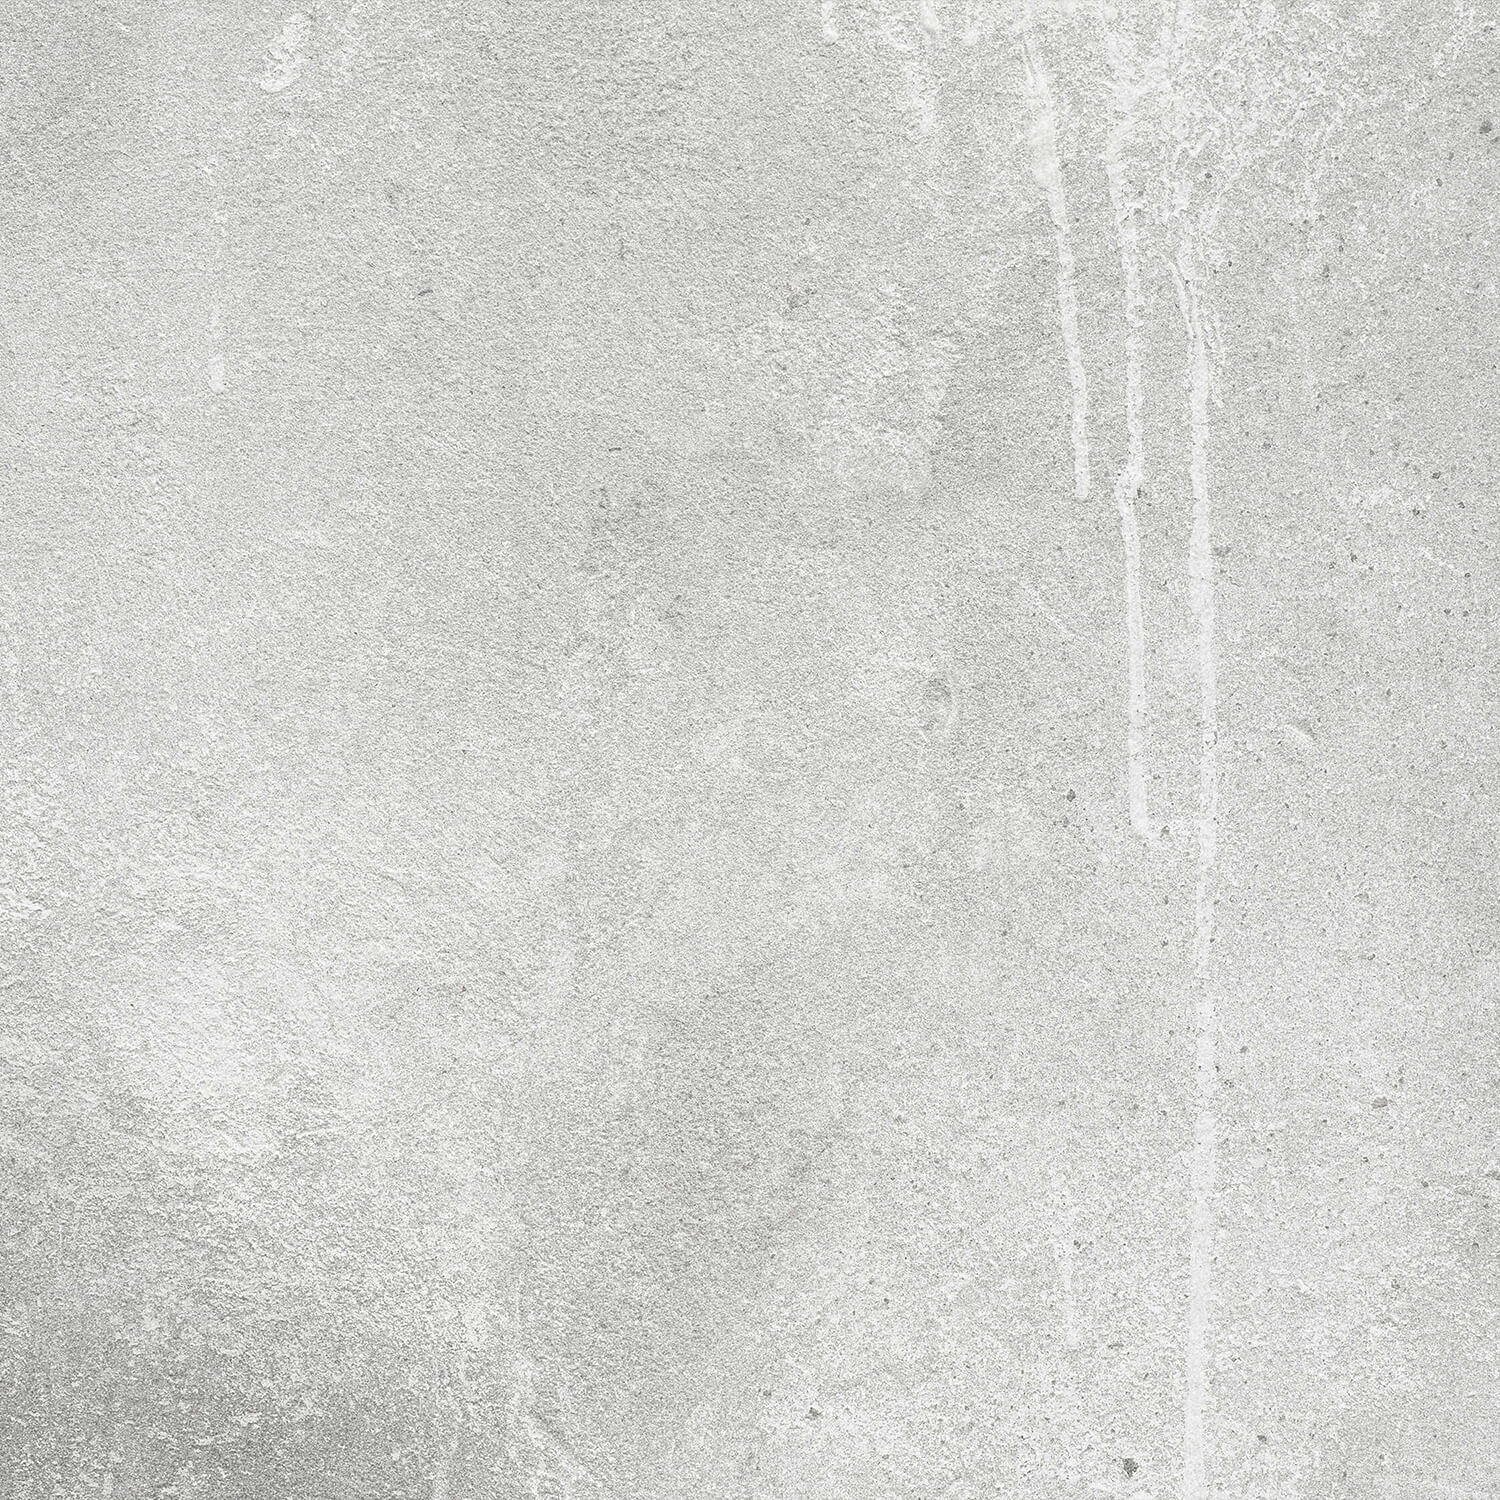 Concrete look wallpaper - Concrete texture - Office 11